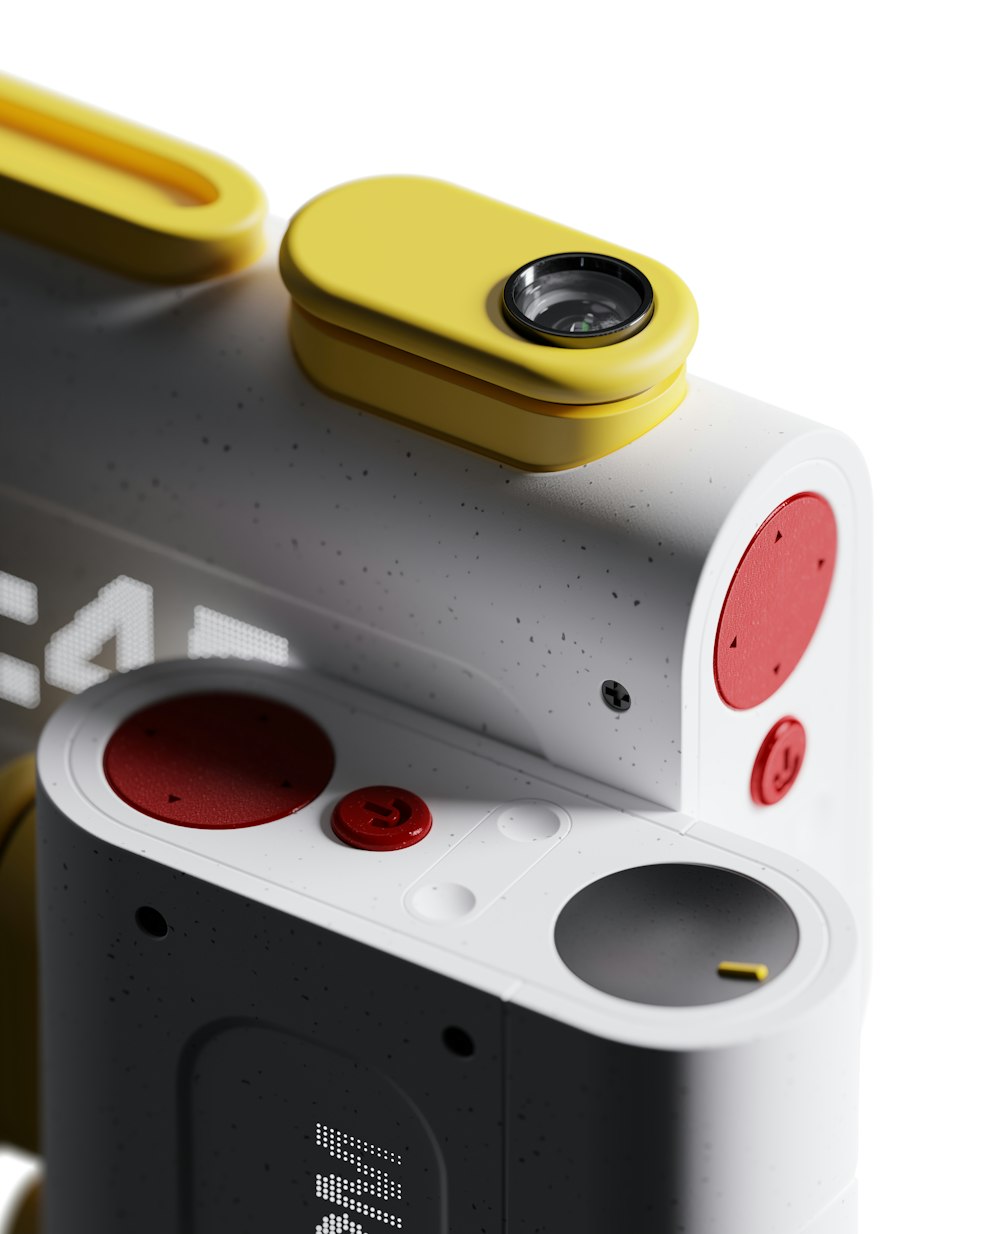 Eine Nahaufnahme einer Kamera mit einem gelben Objektiv